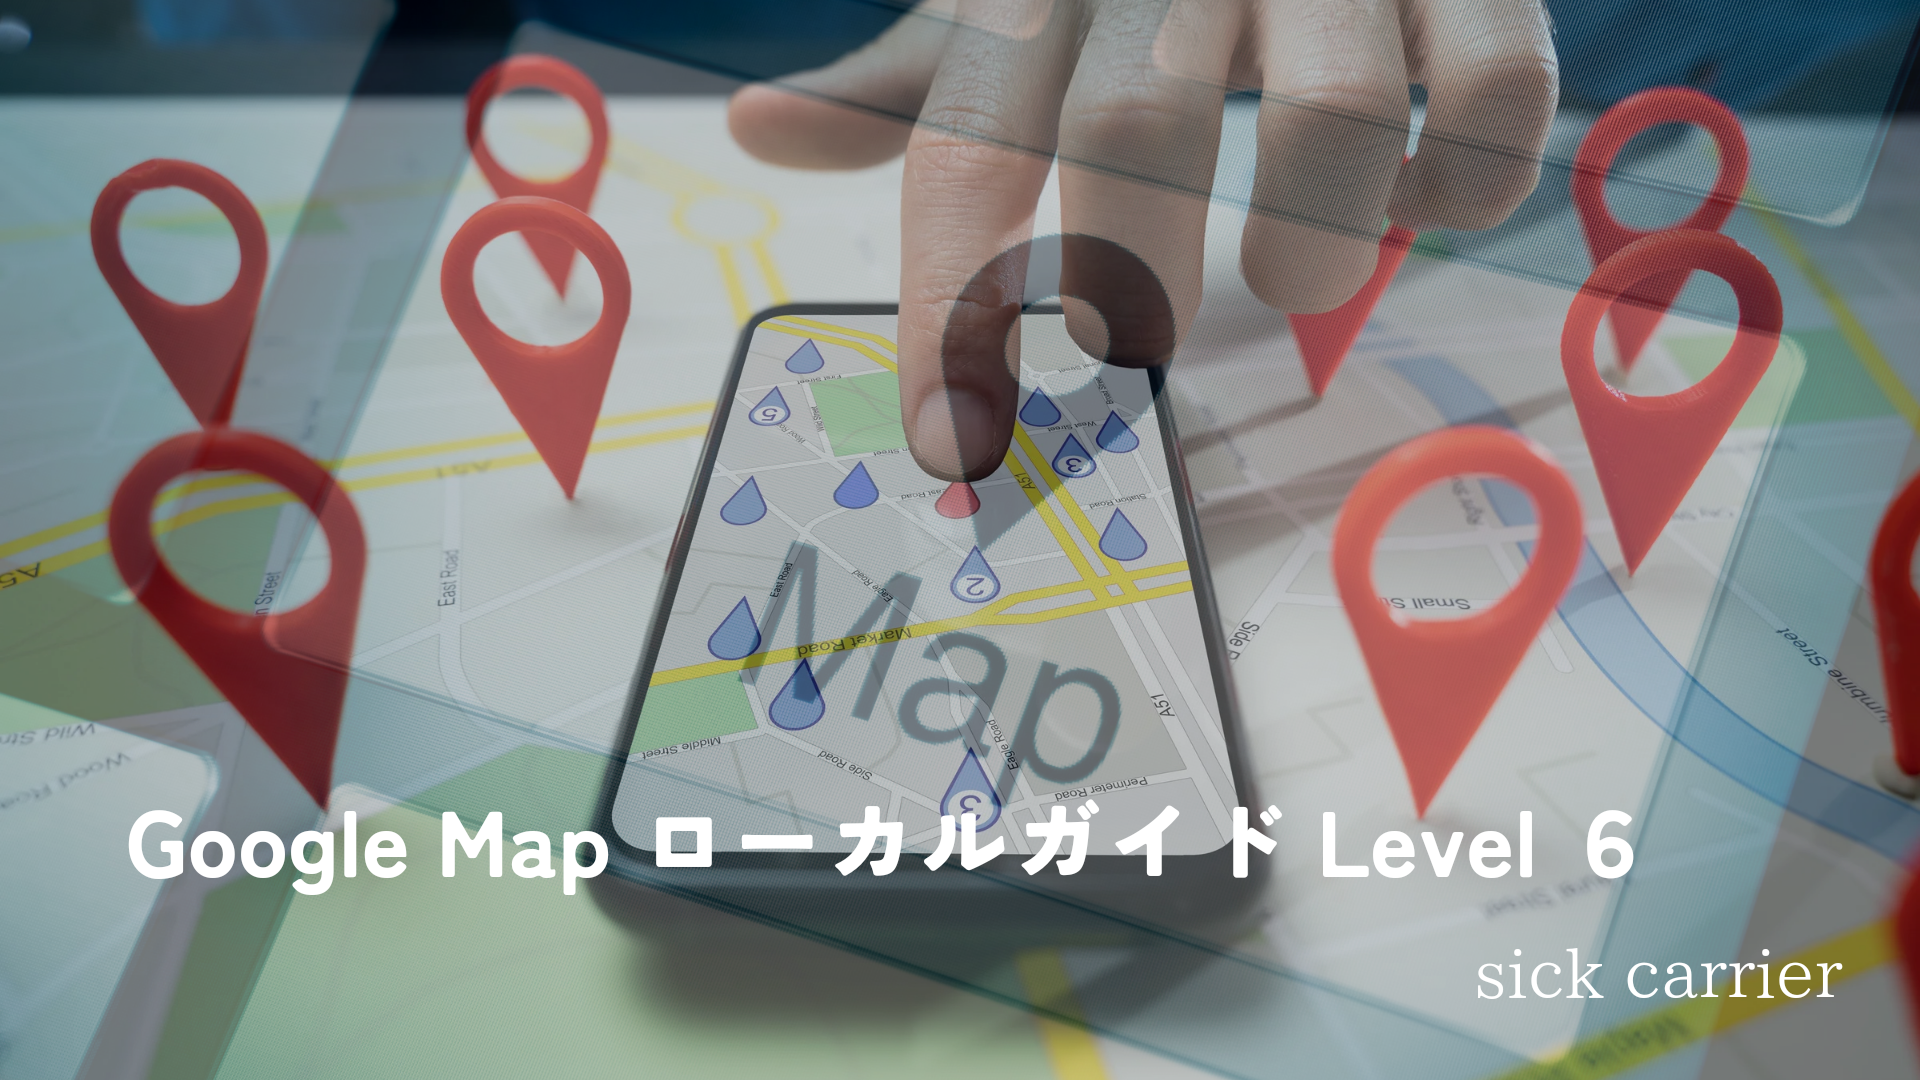 Google Map ローカルガイド Level 6